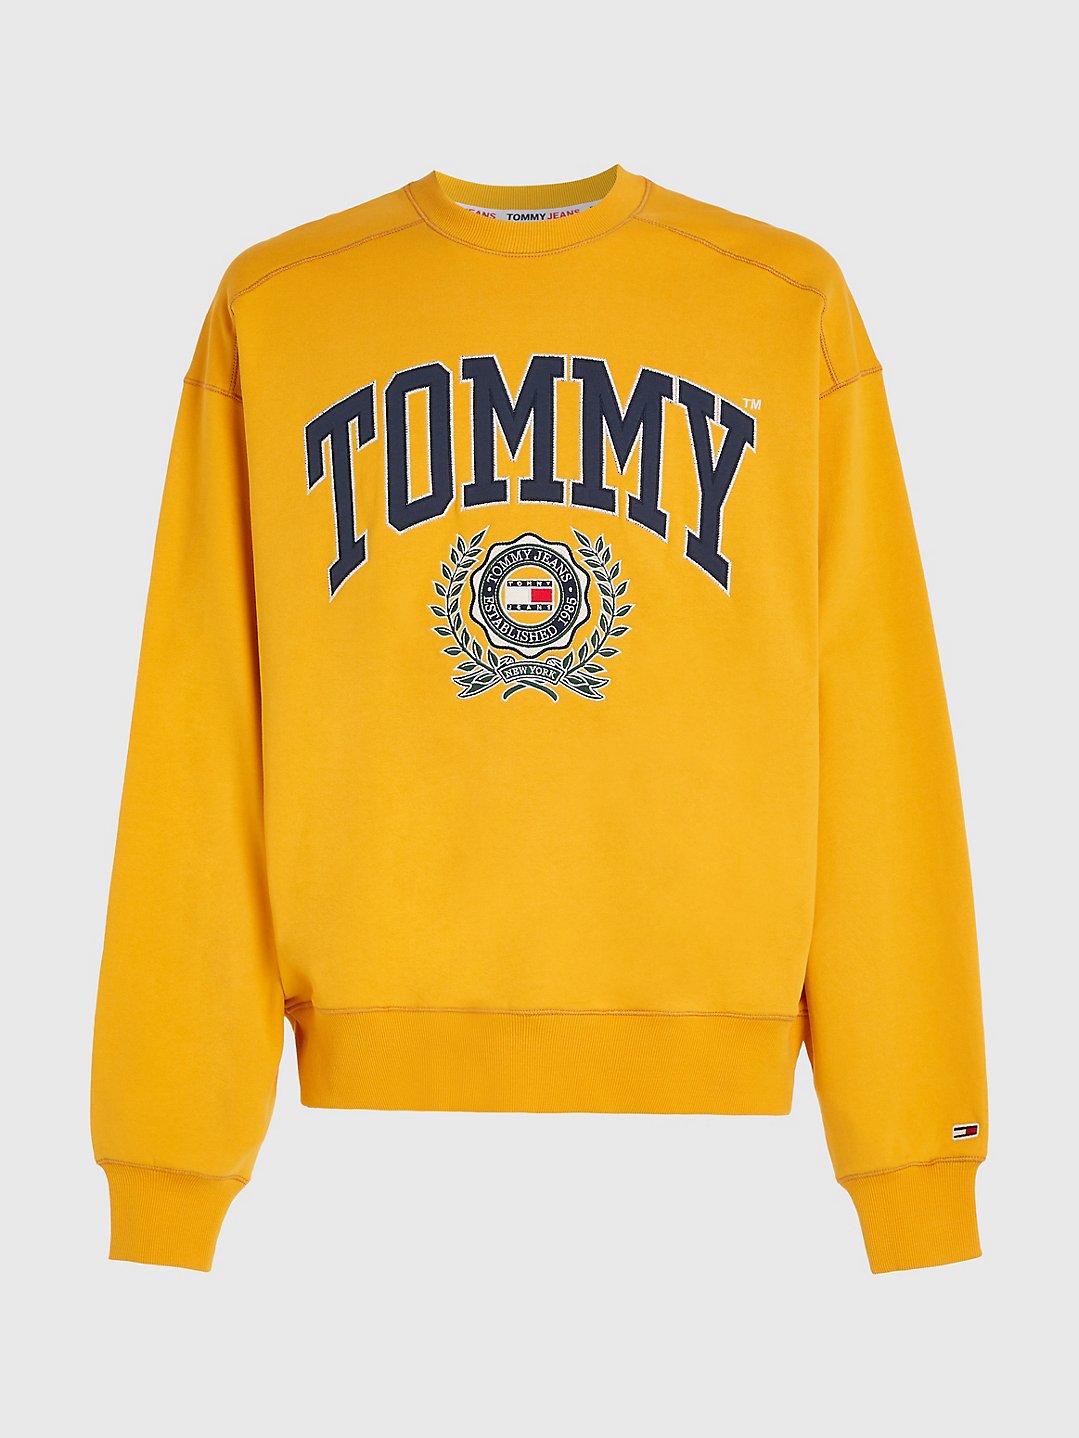 Tommy Hilfiger Men's Collegiate Logo Sweatshirt College Gold DM16804 710